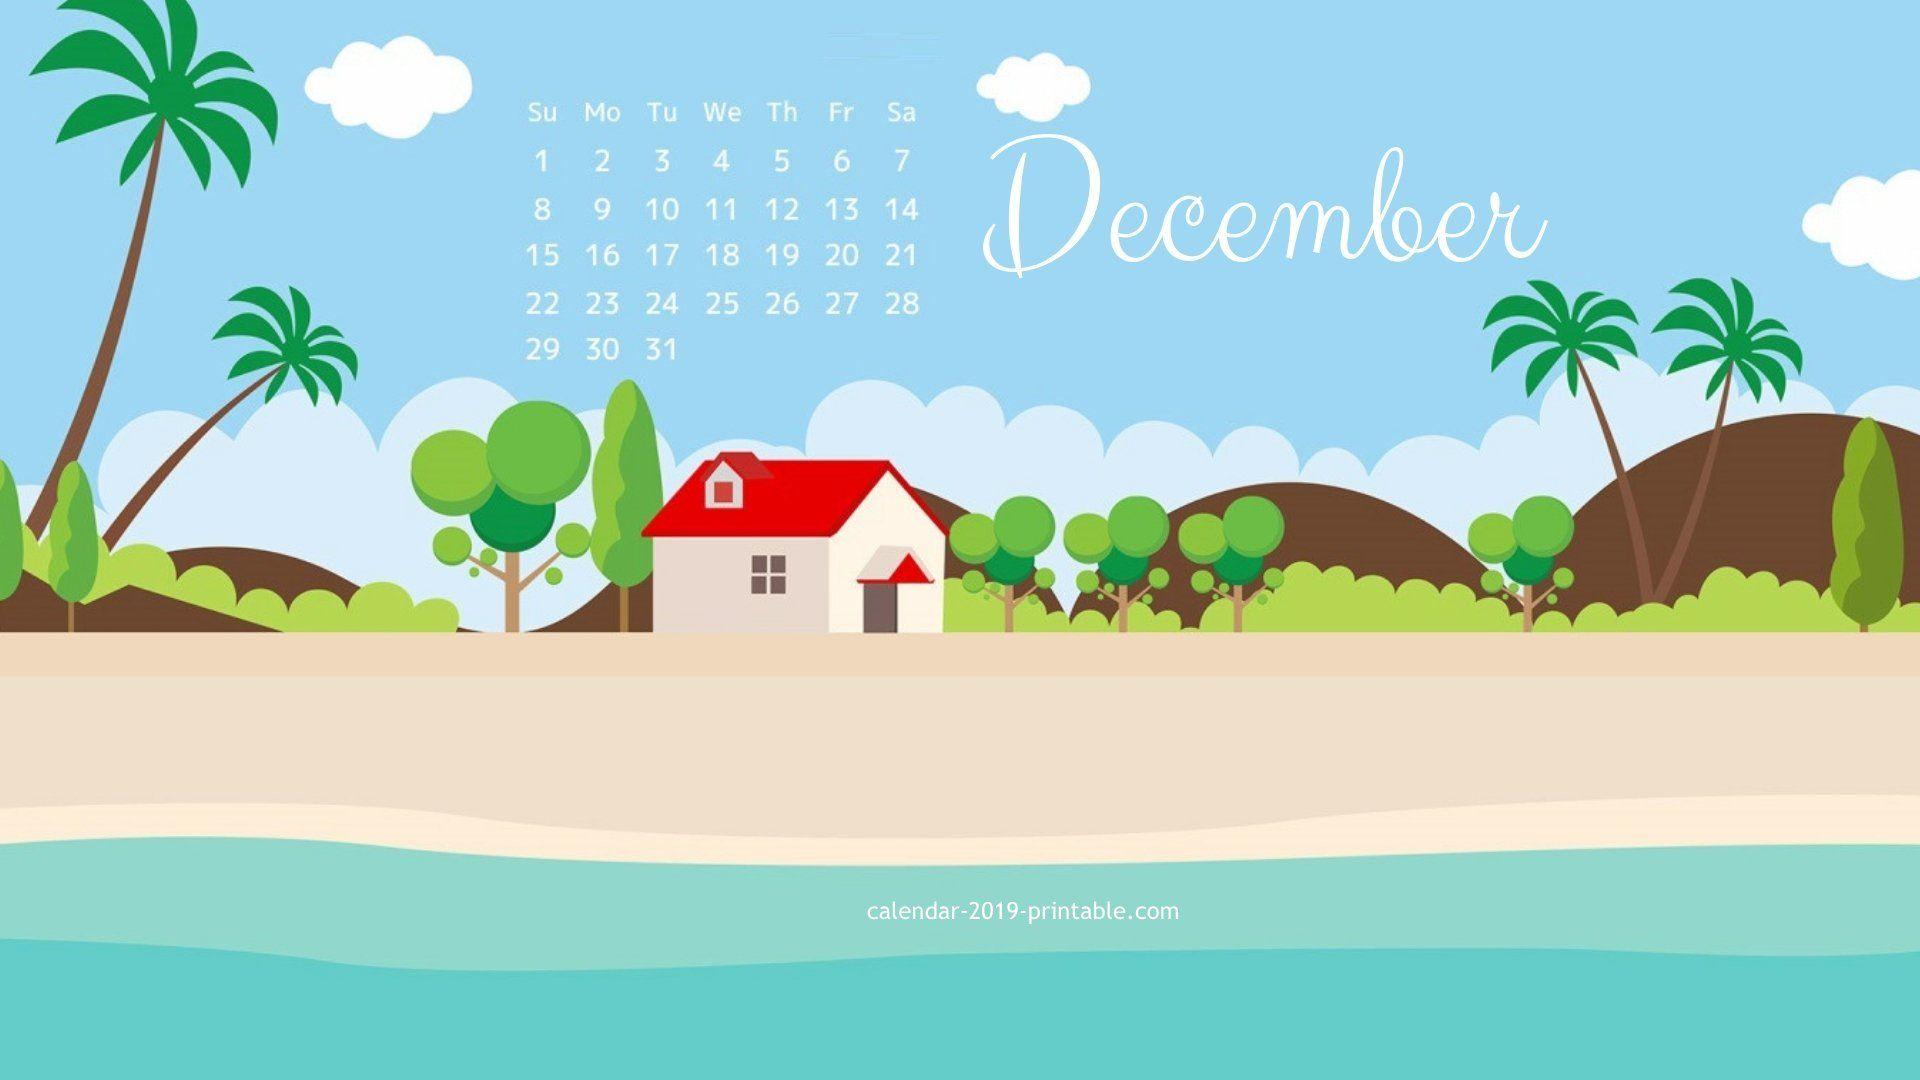 december 2019 HD calendar wallpaper Calendars. Calendar